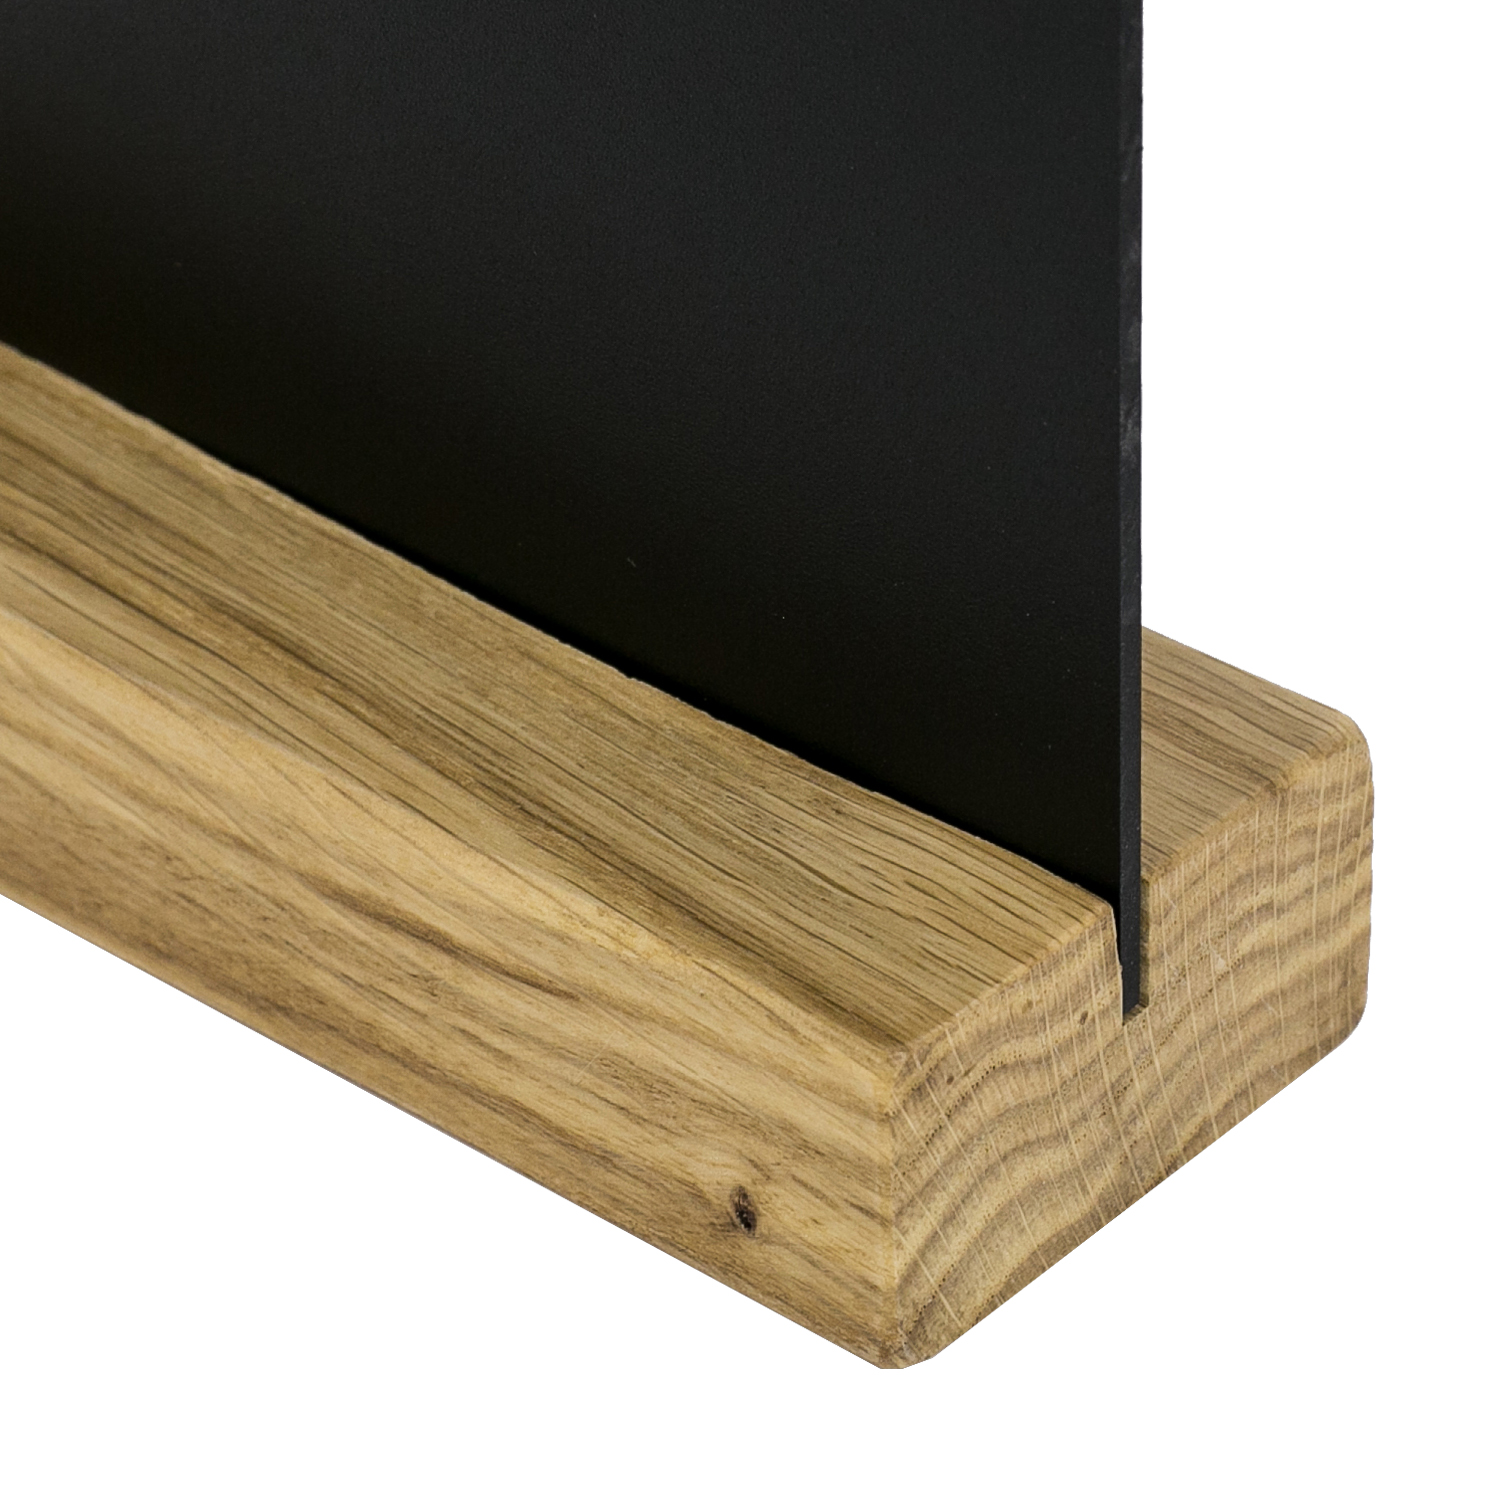 Kreidetafel mit Holzfuß als Tischaufsteller von HMF in DIN A5 Hochformat in Schwarz